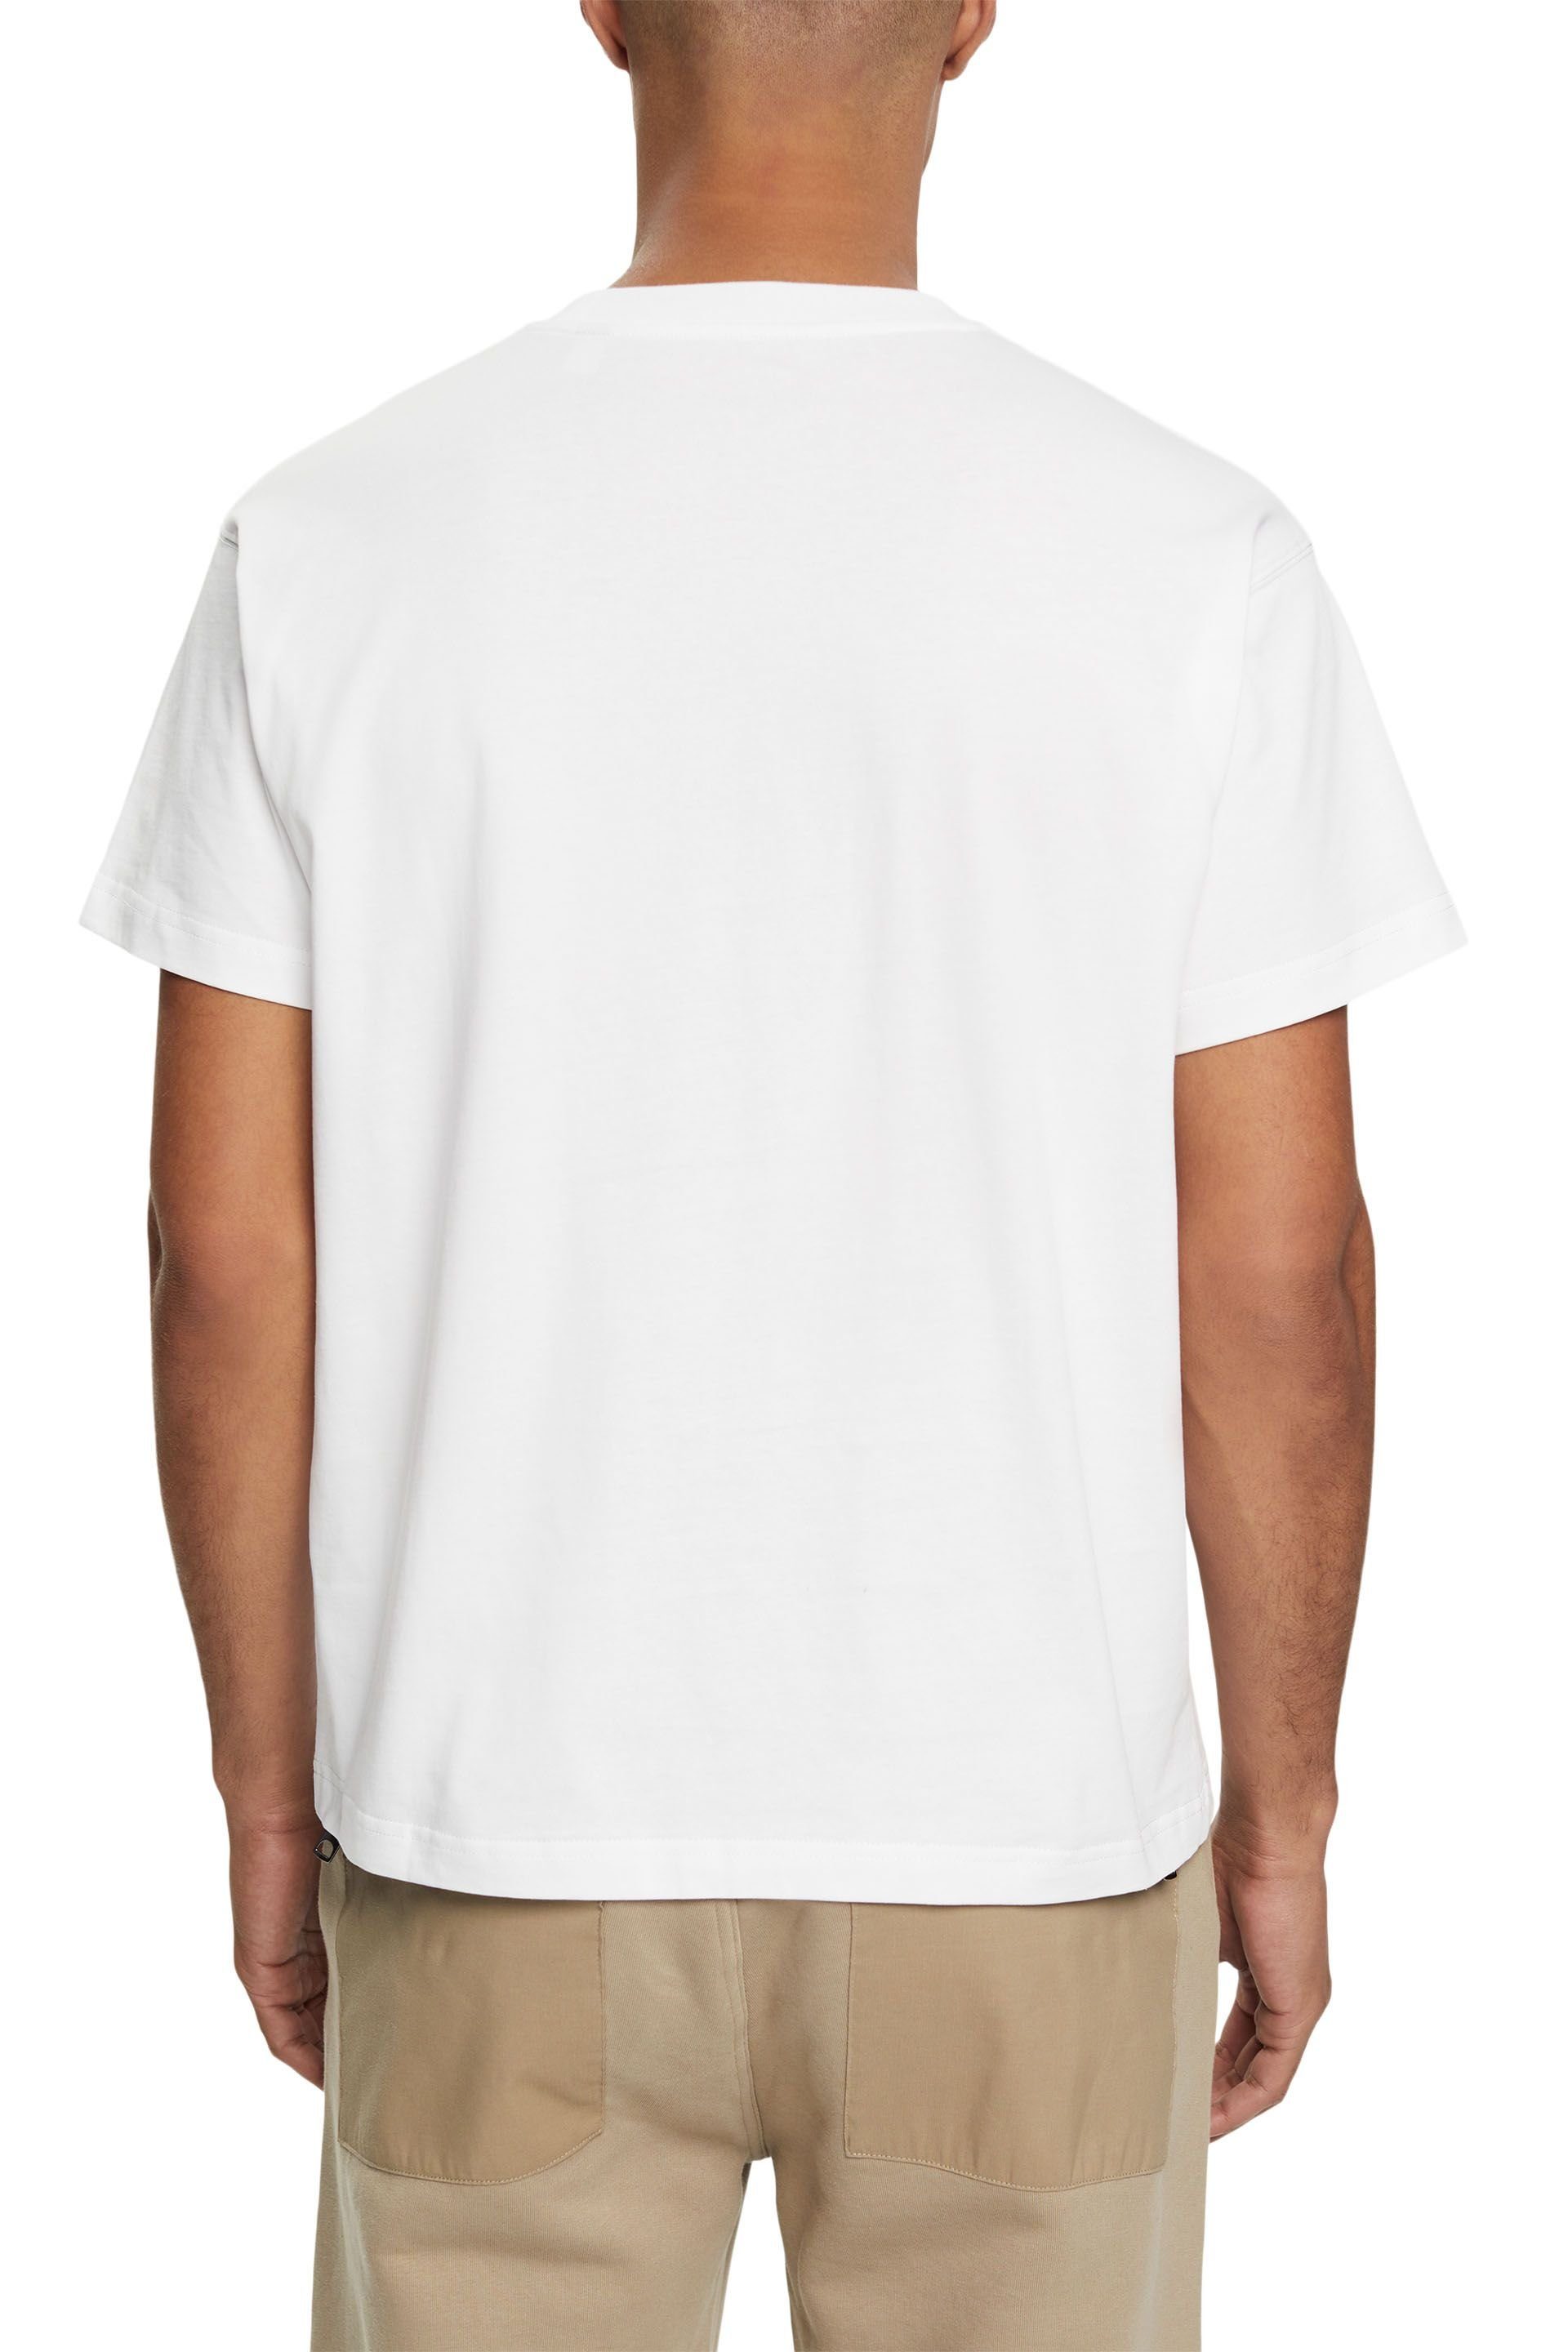 T-Shirt Esprit